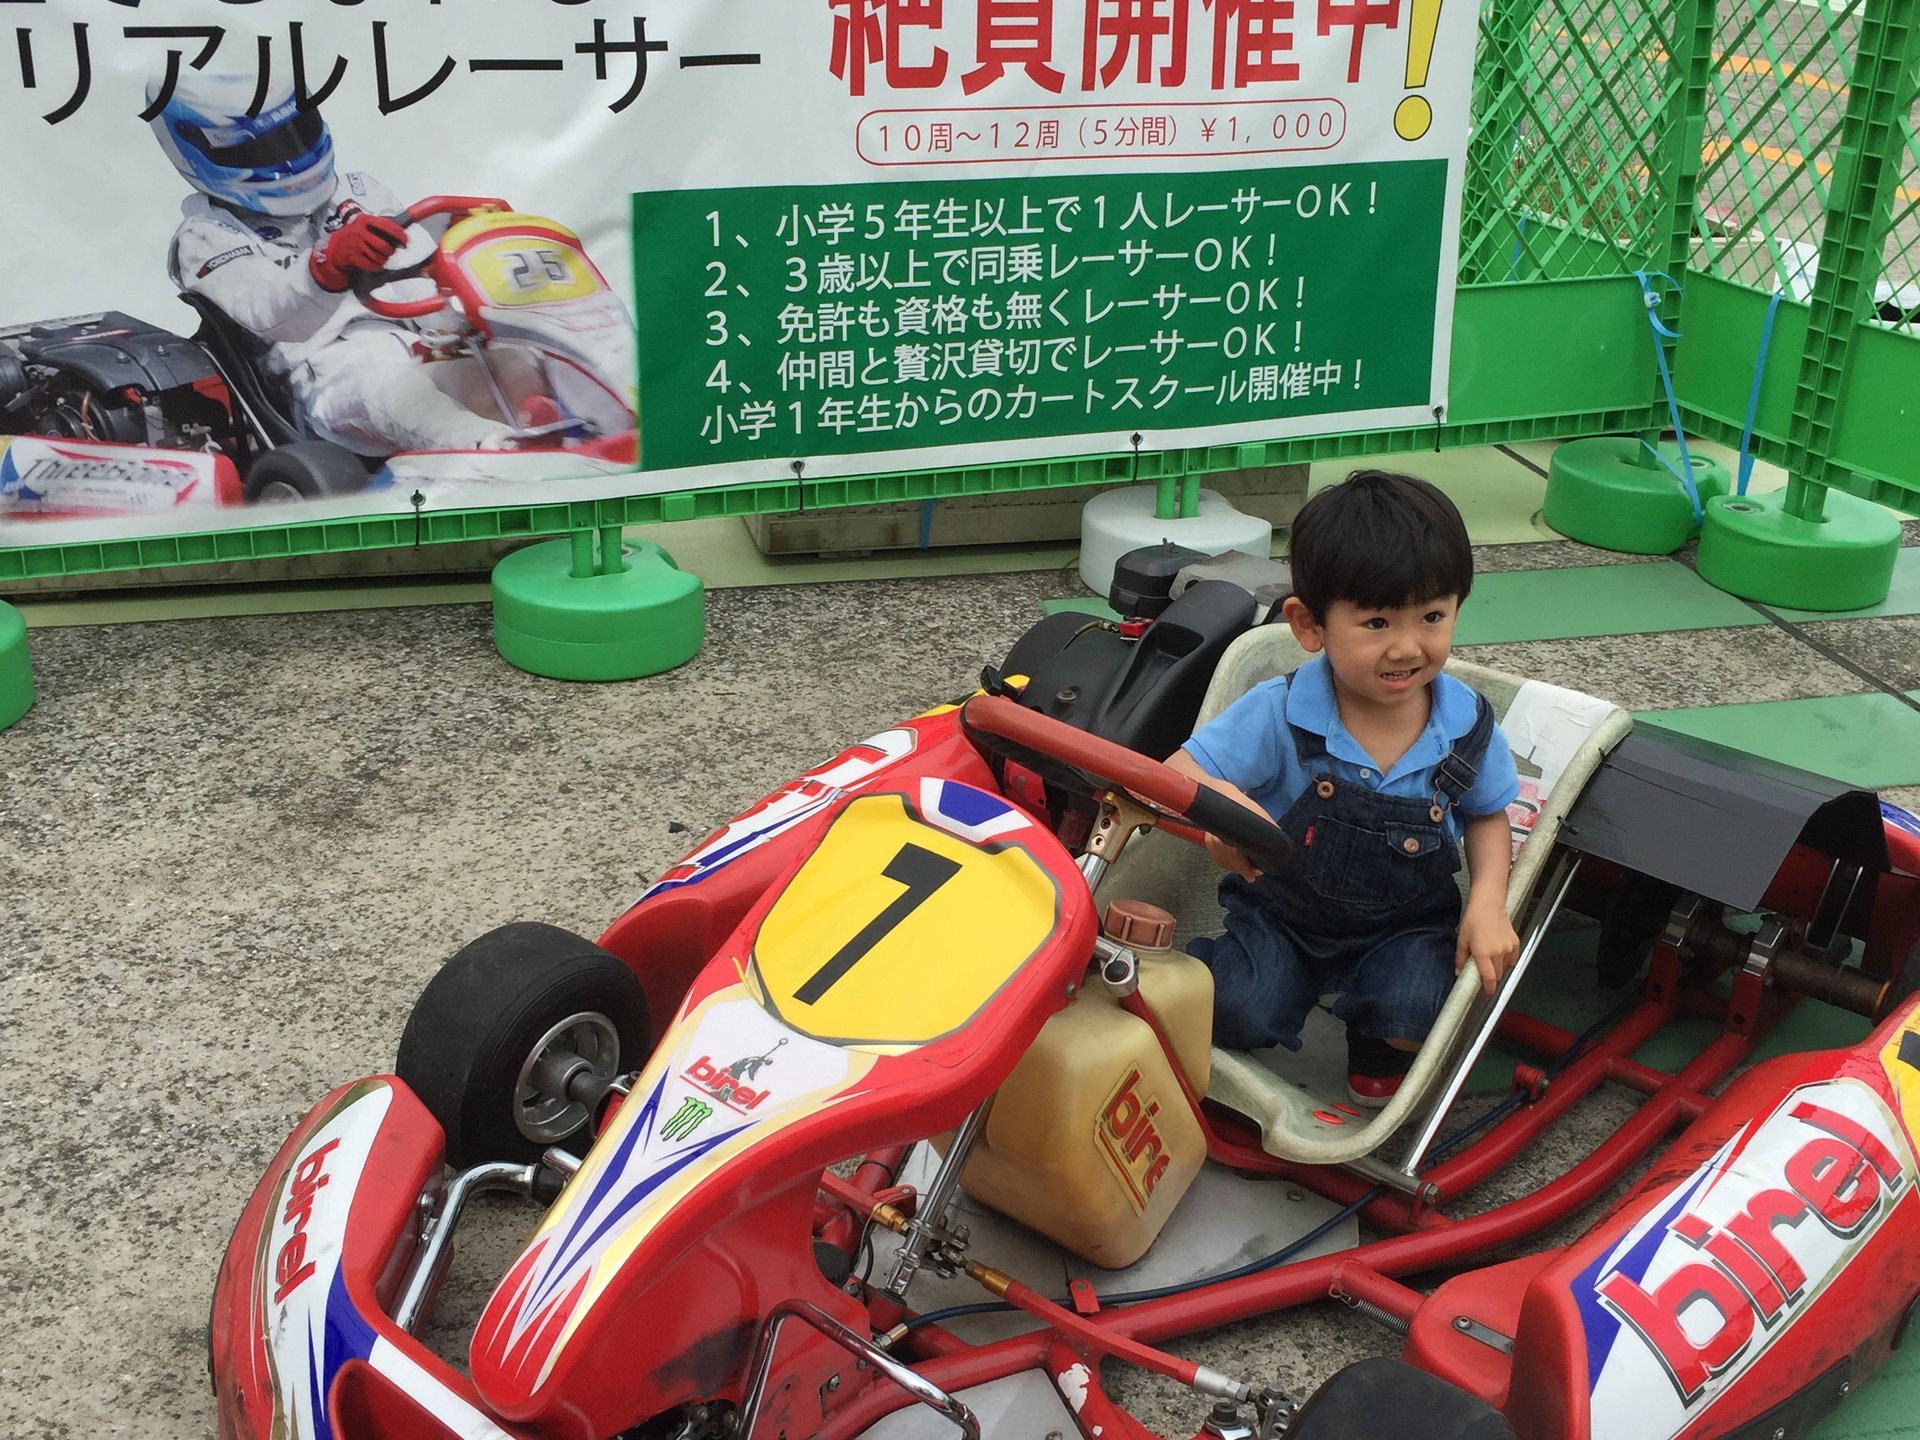 レーシングカート体験サーキットがやってきました！横浜ワールドポーター屋上に期間限定オープンです